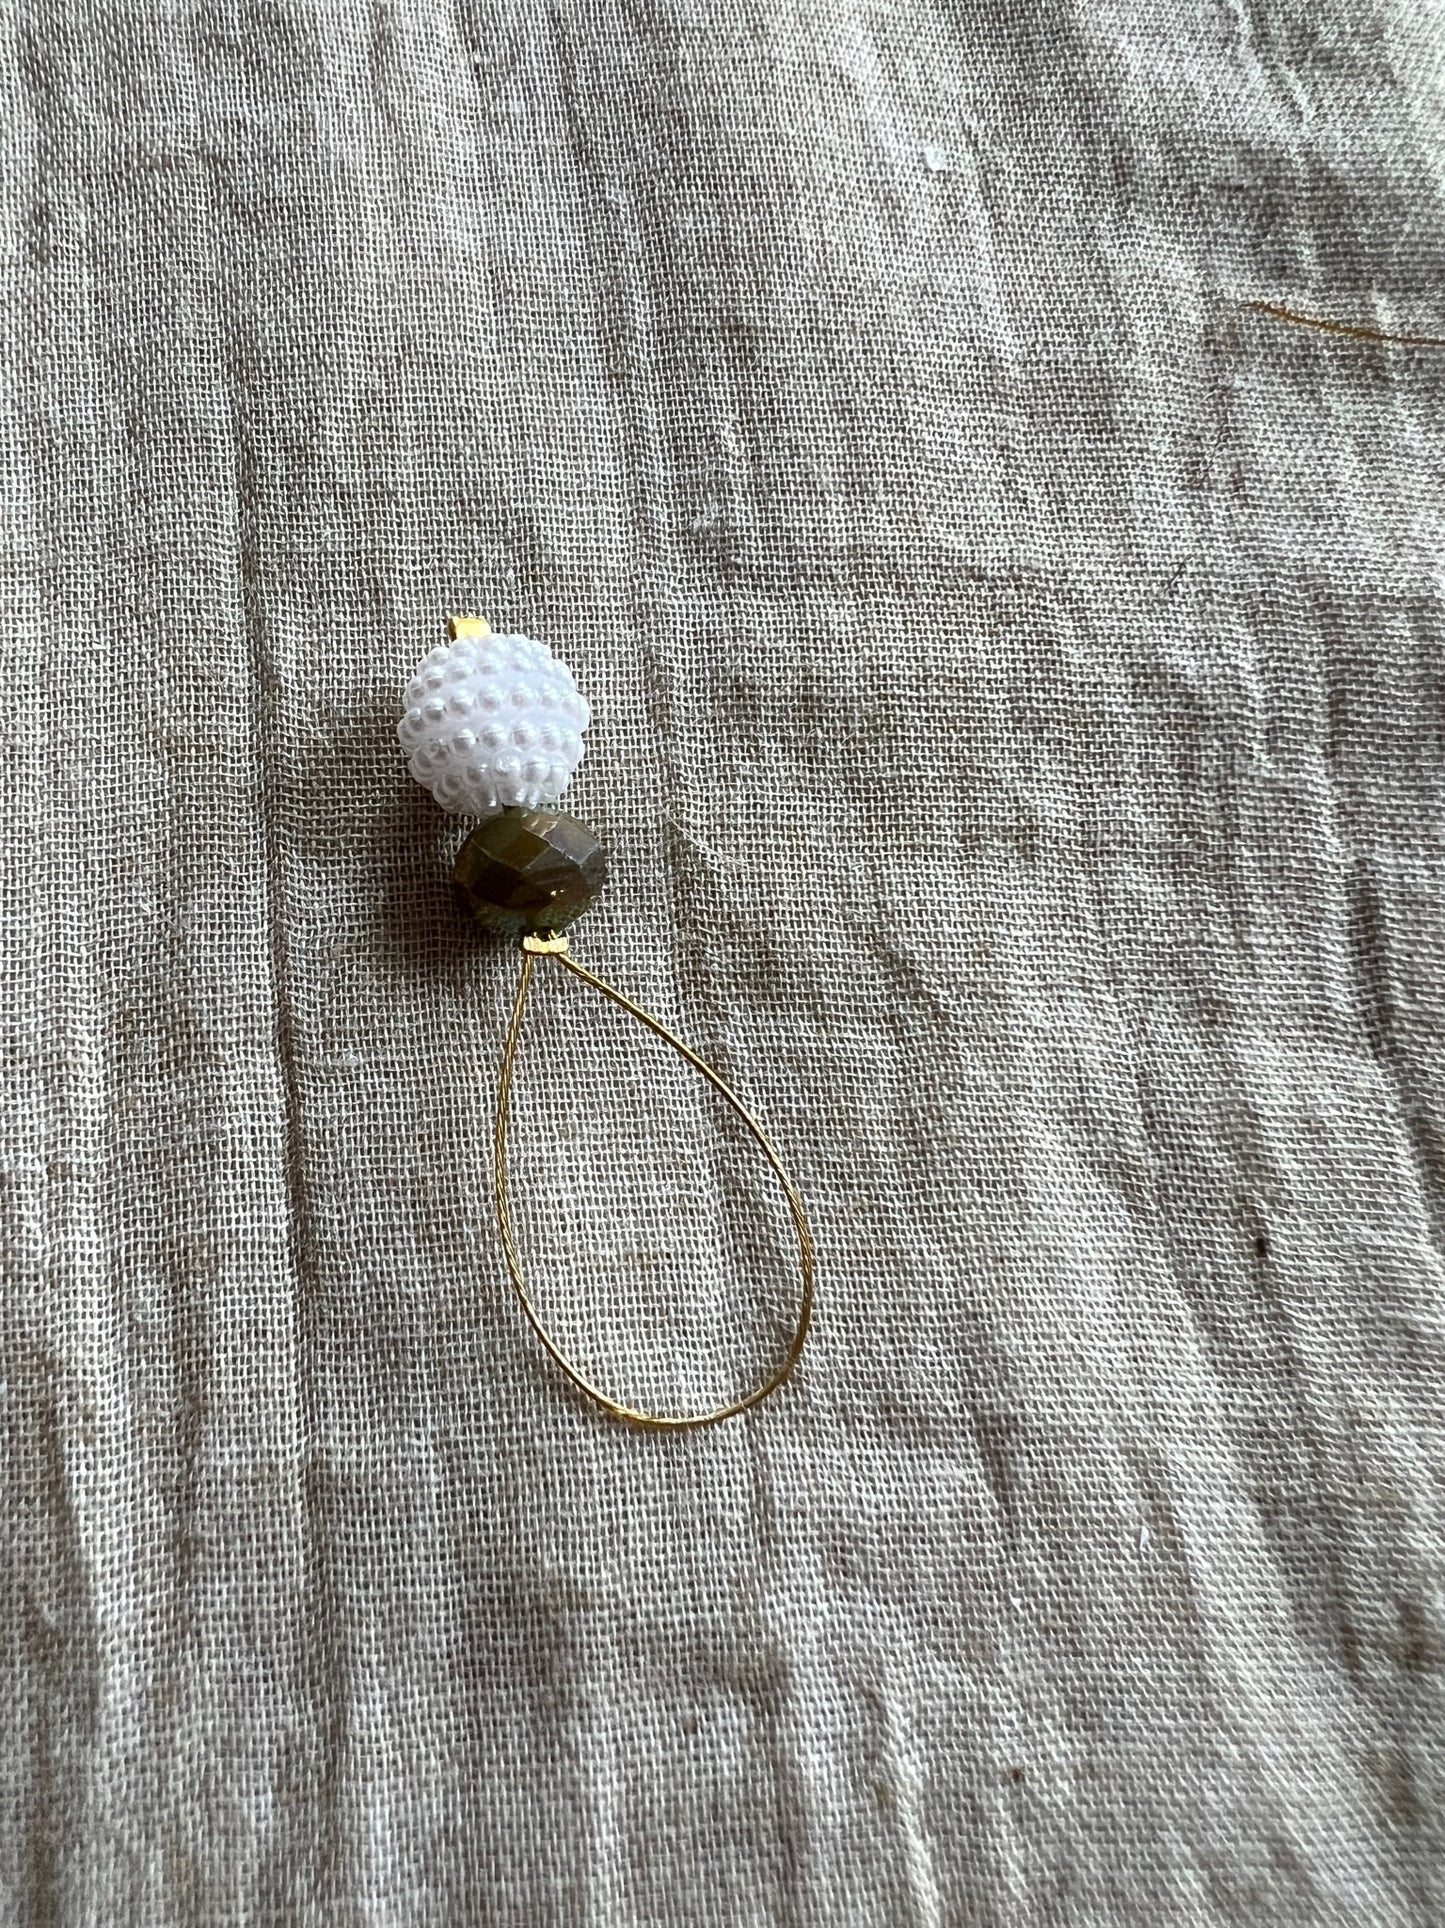 Maskemarkør med hvid bærkugle, mørkgrøn perle og guldfarvet wire, 1 stk.